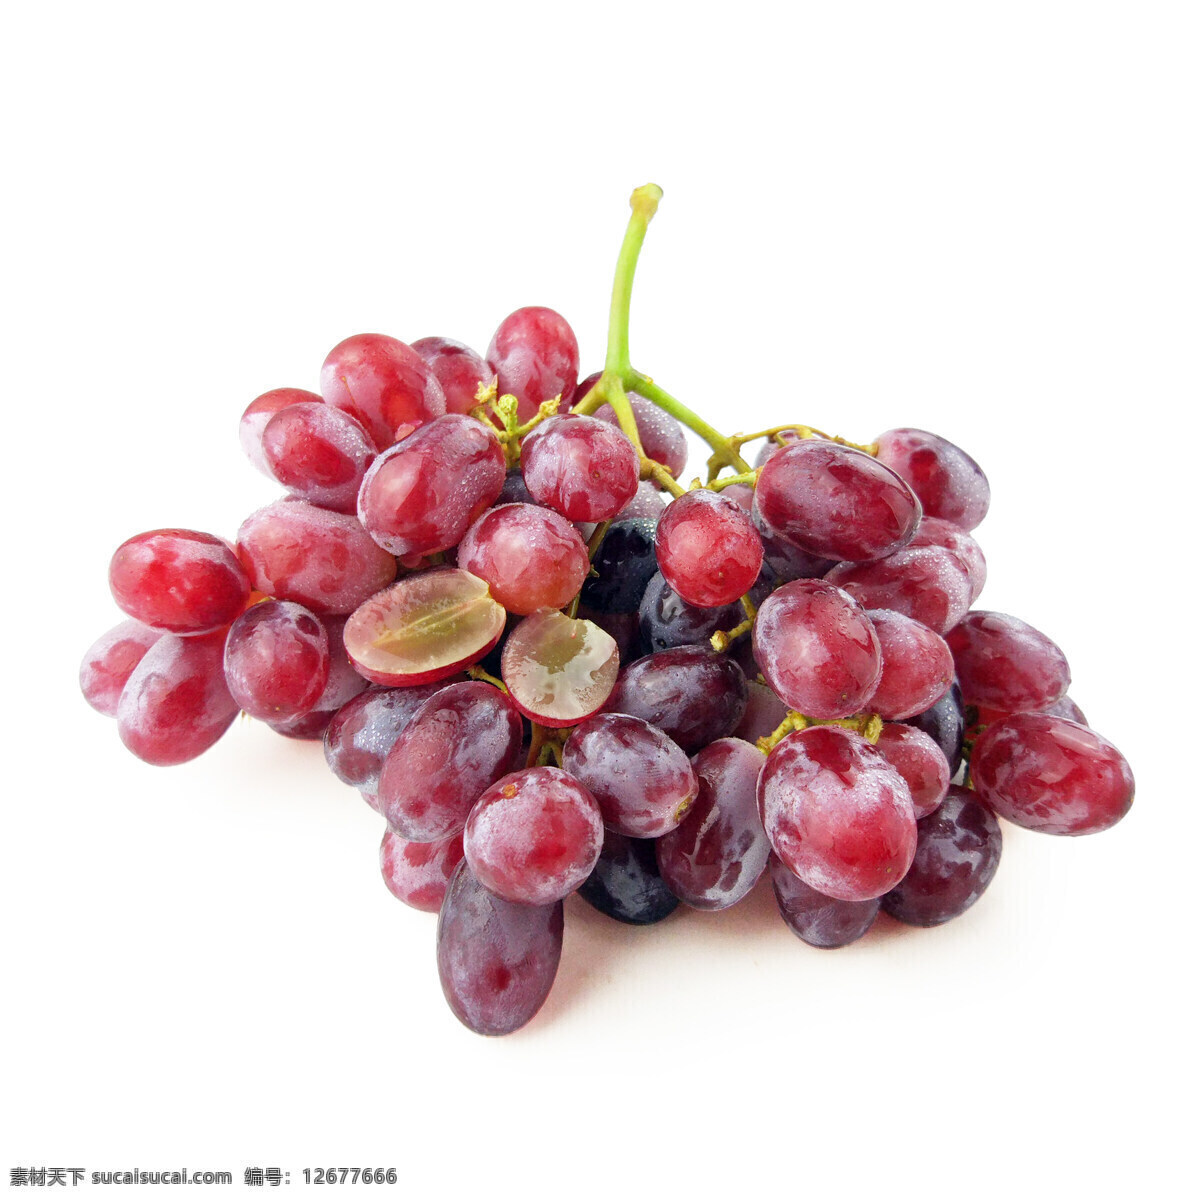 美国无籽红提 红提 提子 葡萄 马奶提 生物世界 水果